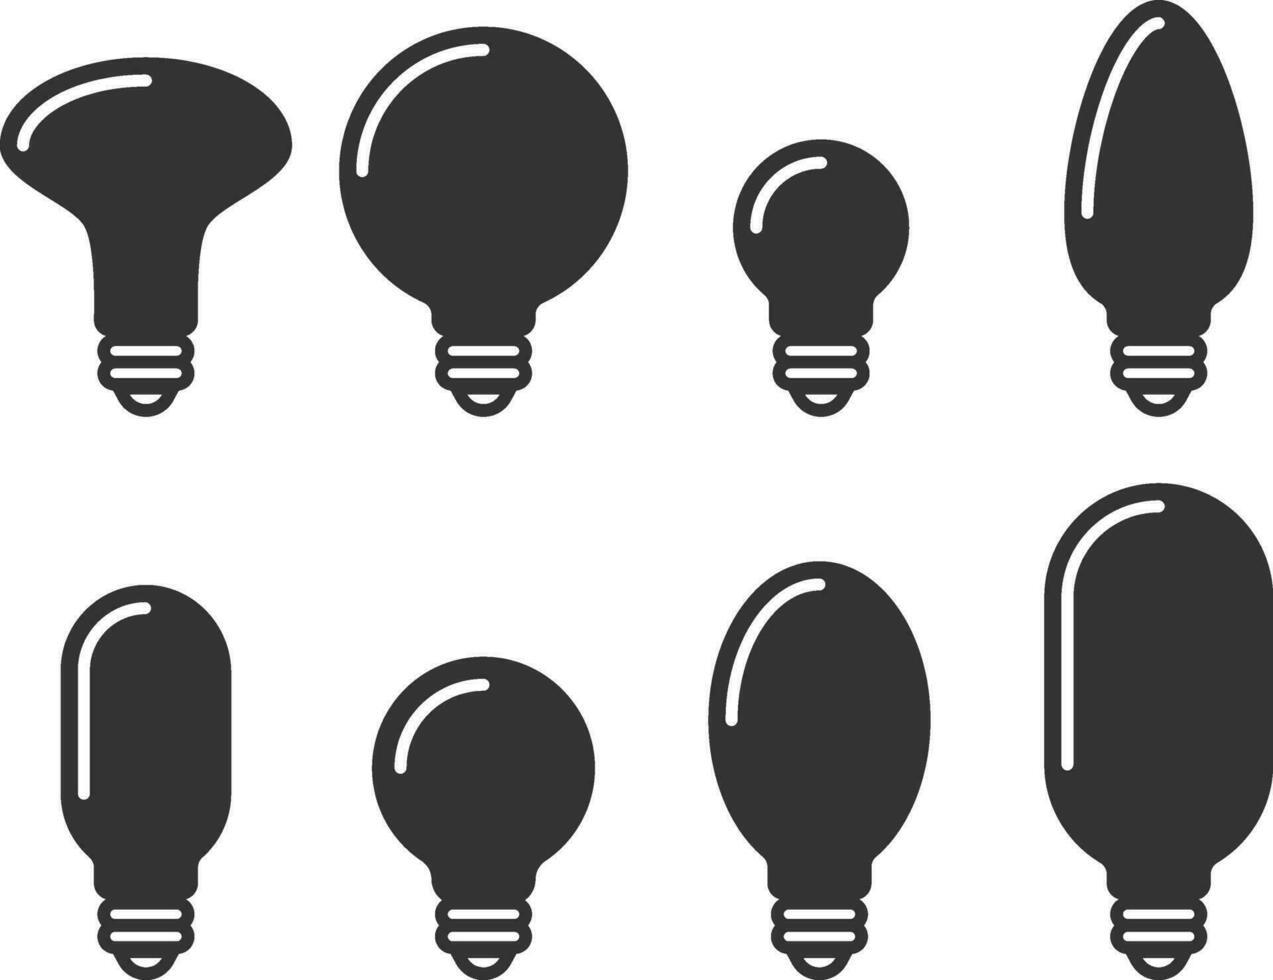 vetor de ícone de lâmpada. conceito de logotipo de ideia de lâmpada. definir o elemento de design web de ícones de eletricidade de lâmpadas. silhueta isolada de luzes led.